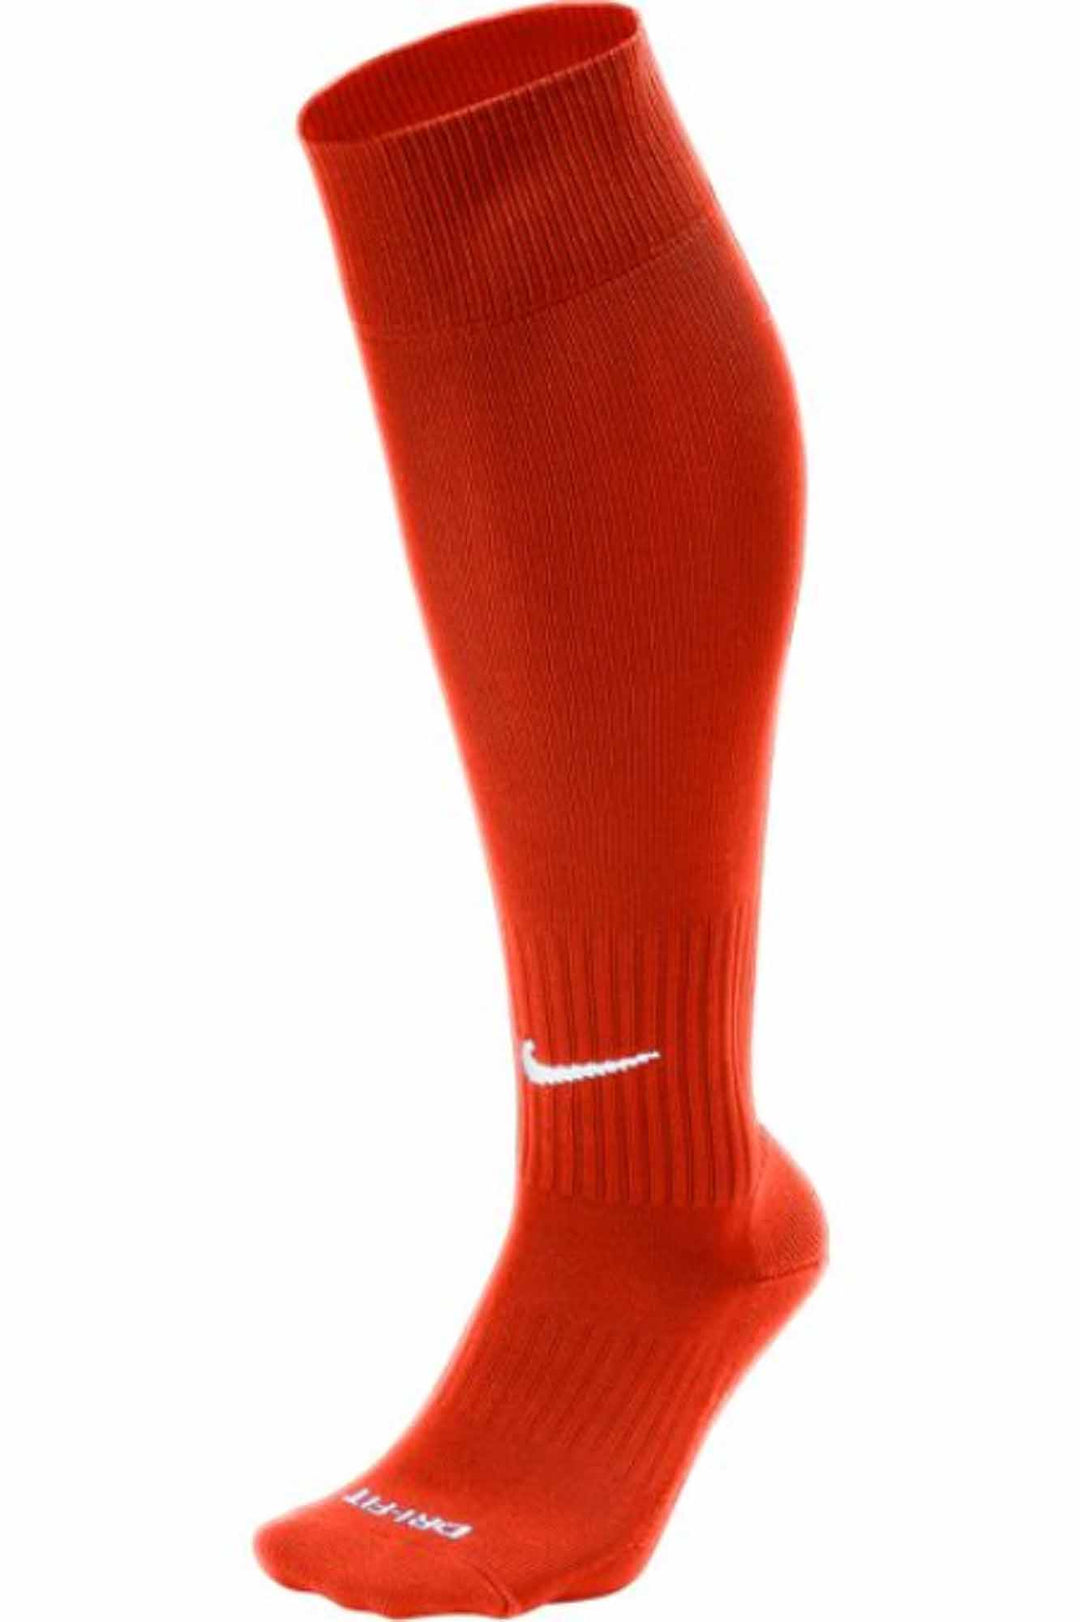 Nike ACS Classic II Sock - Orange, White and Navy  ORANGE Large (9-13) - Third Coast Soccer